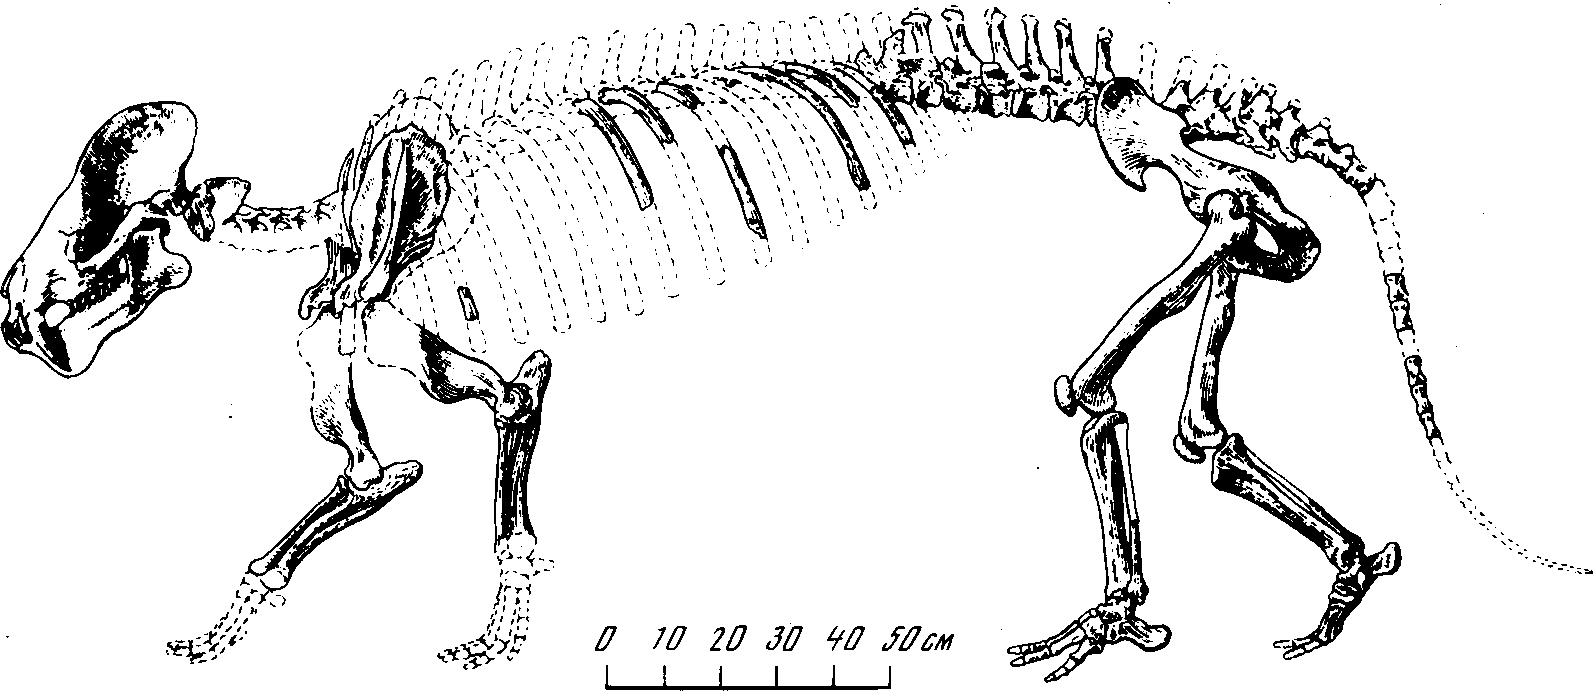 Рис. 41. Скелет монголотерия (Mongolotherium plantigradum Flerov), архаического безрогого диноцерата. Палеоцен-эоцен. Наран-Булак, Монголия (К.К. Флеров, 1954)